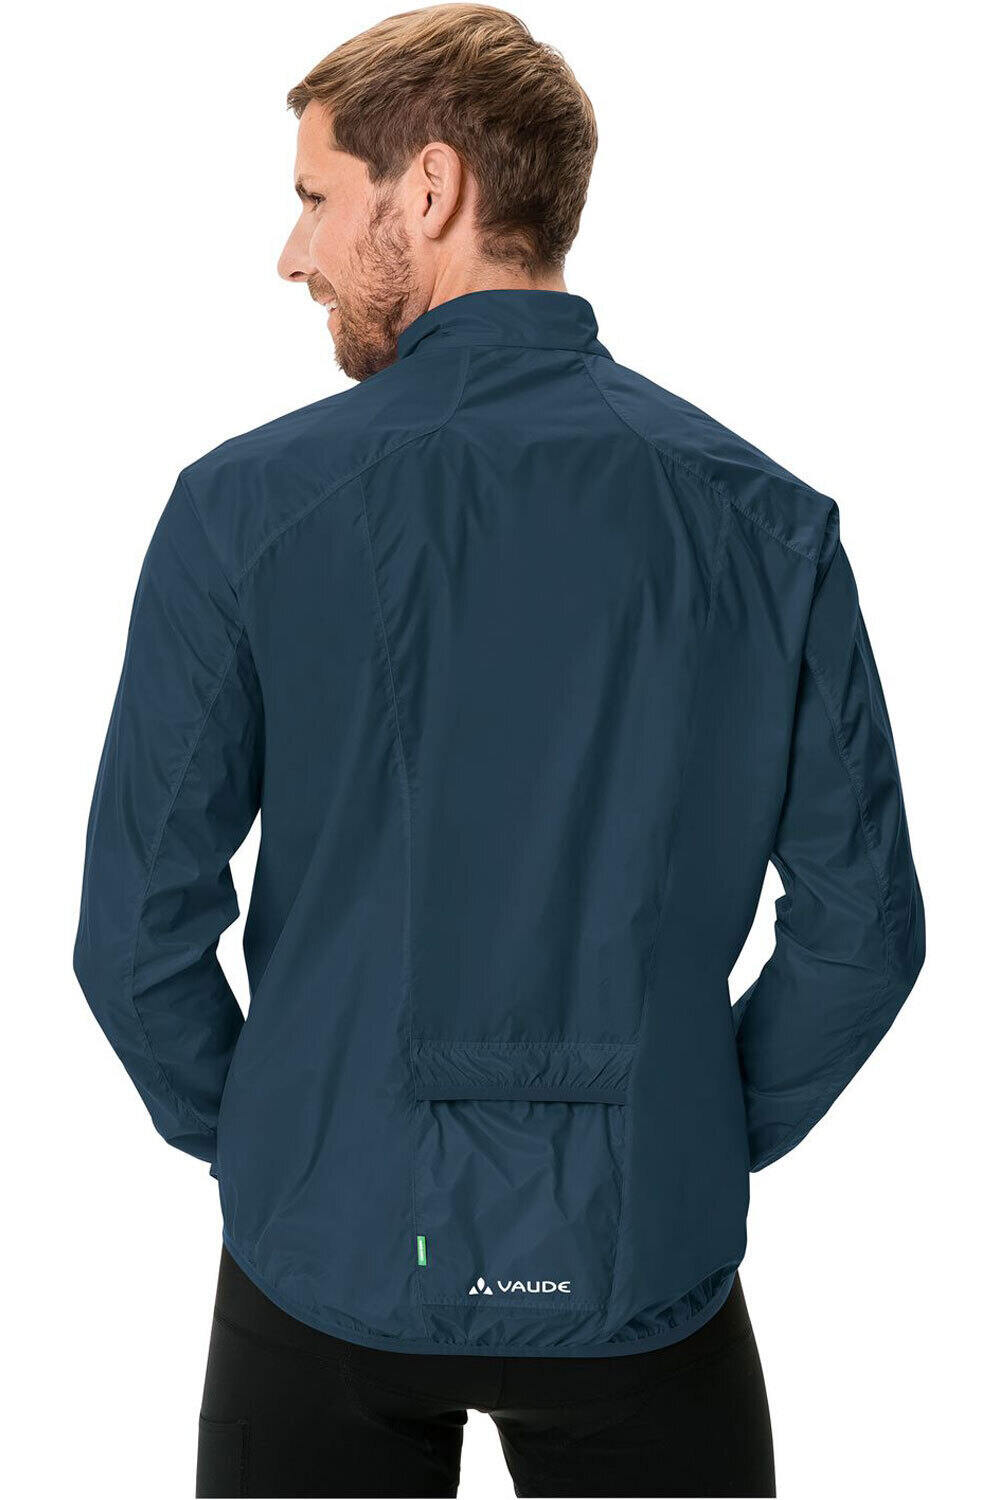 Vaude chaqueta impermeable ciclismo hombre Men's Air Jacket III vista trasera